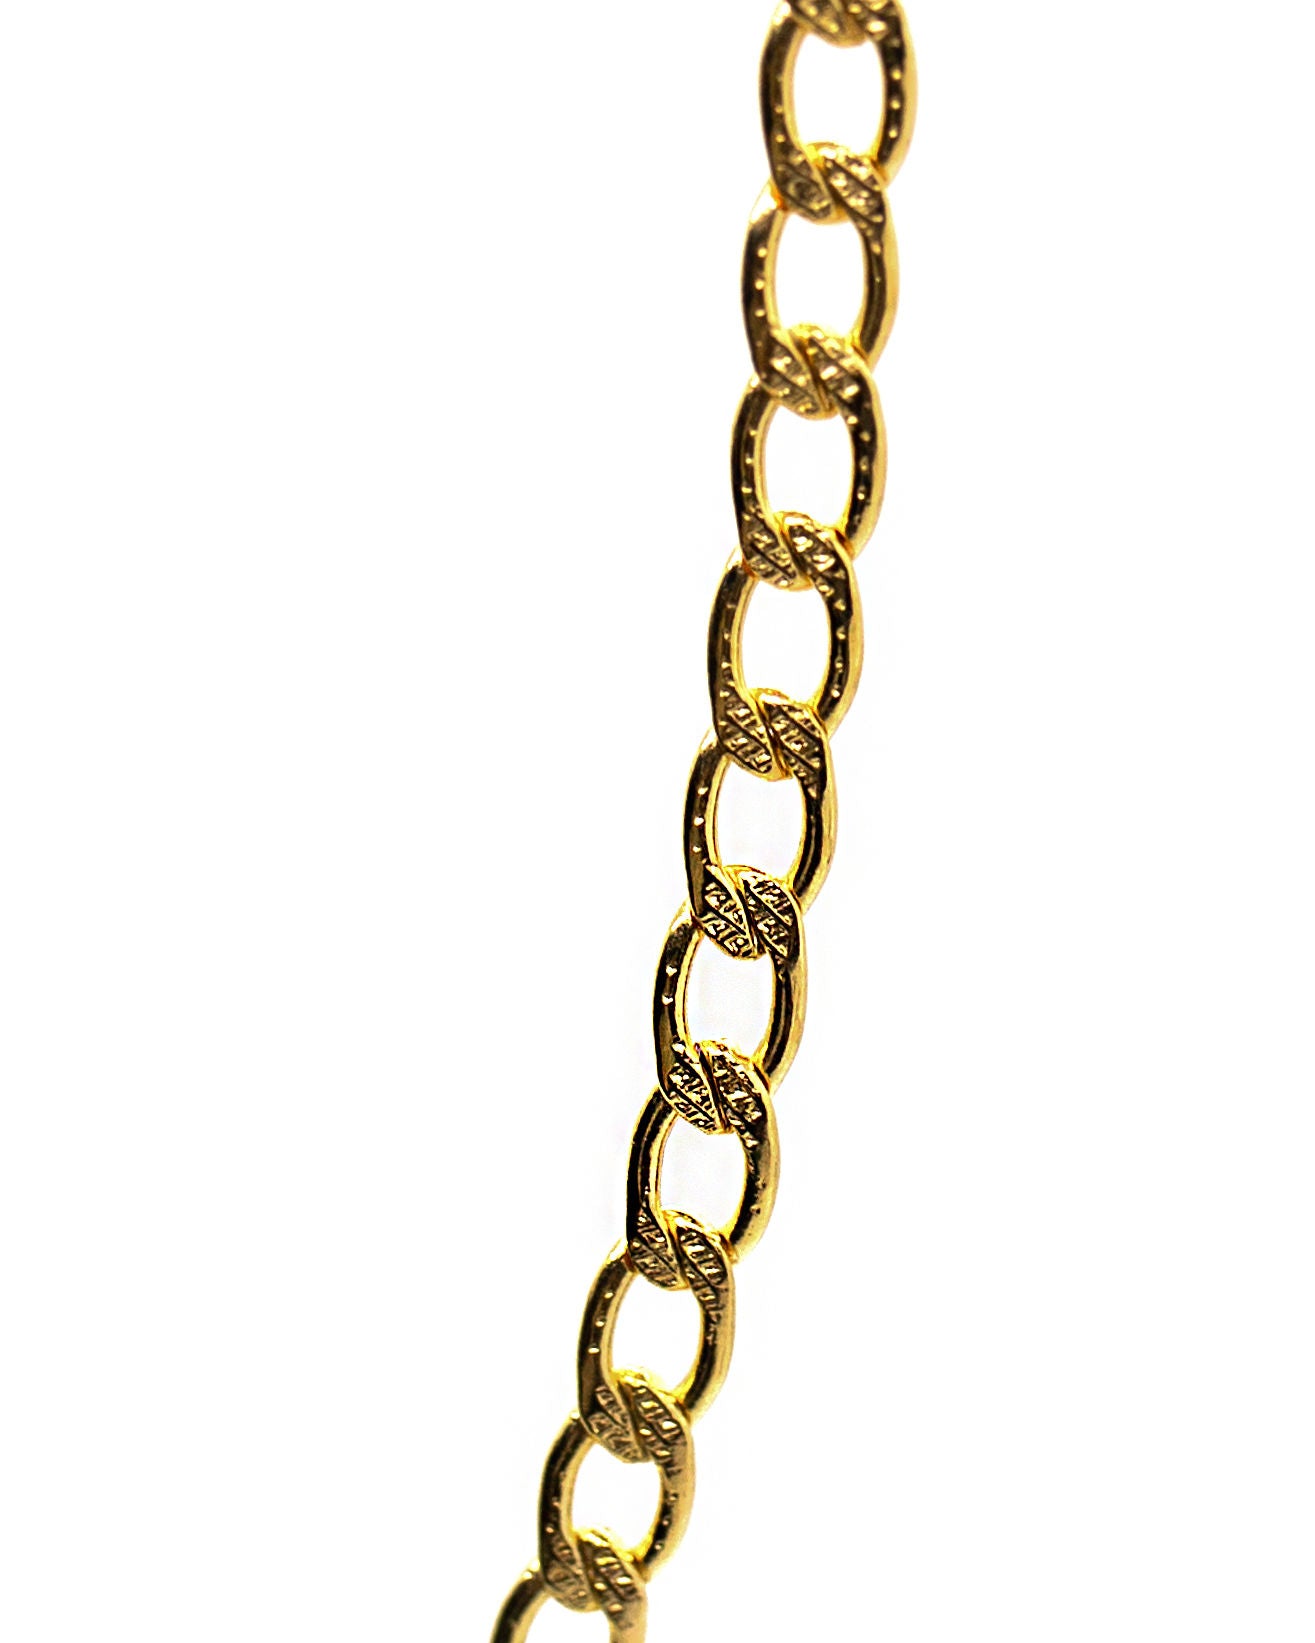 La Vida Loca Necklace Chain